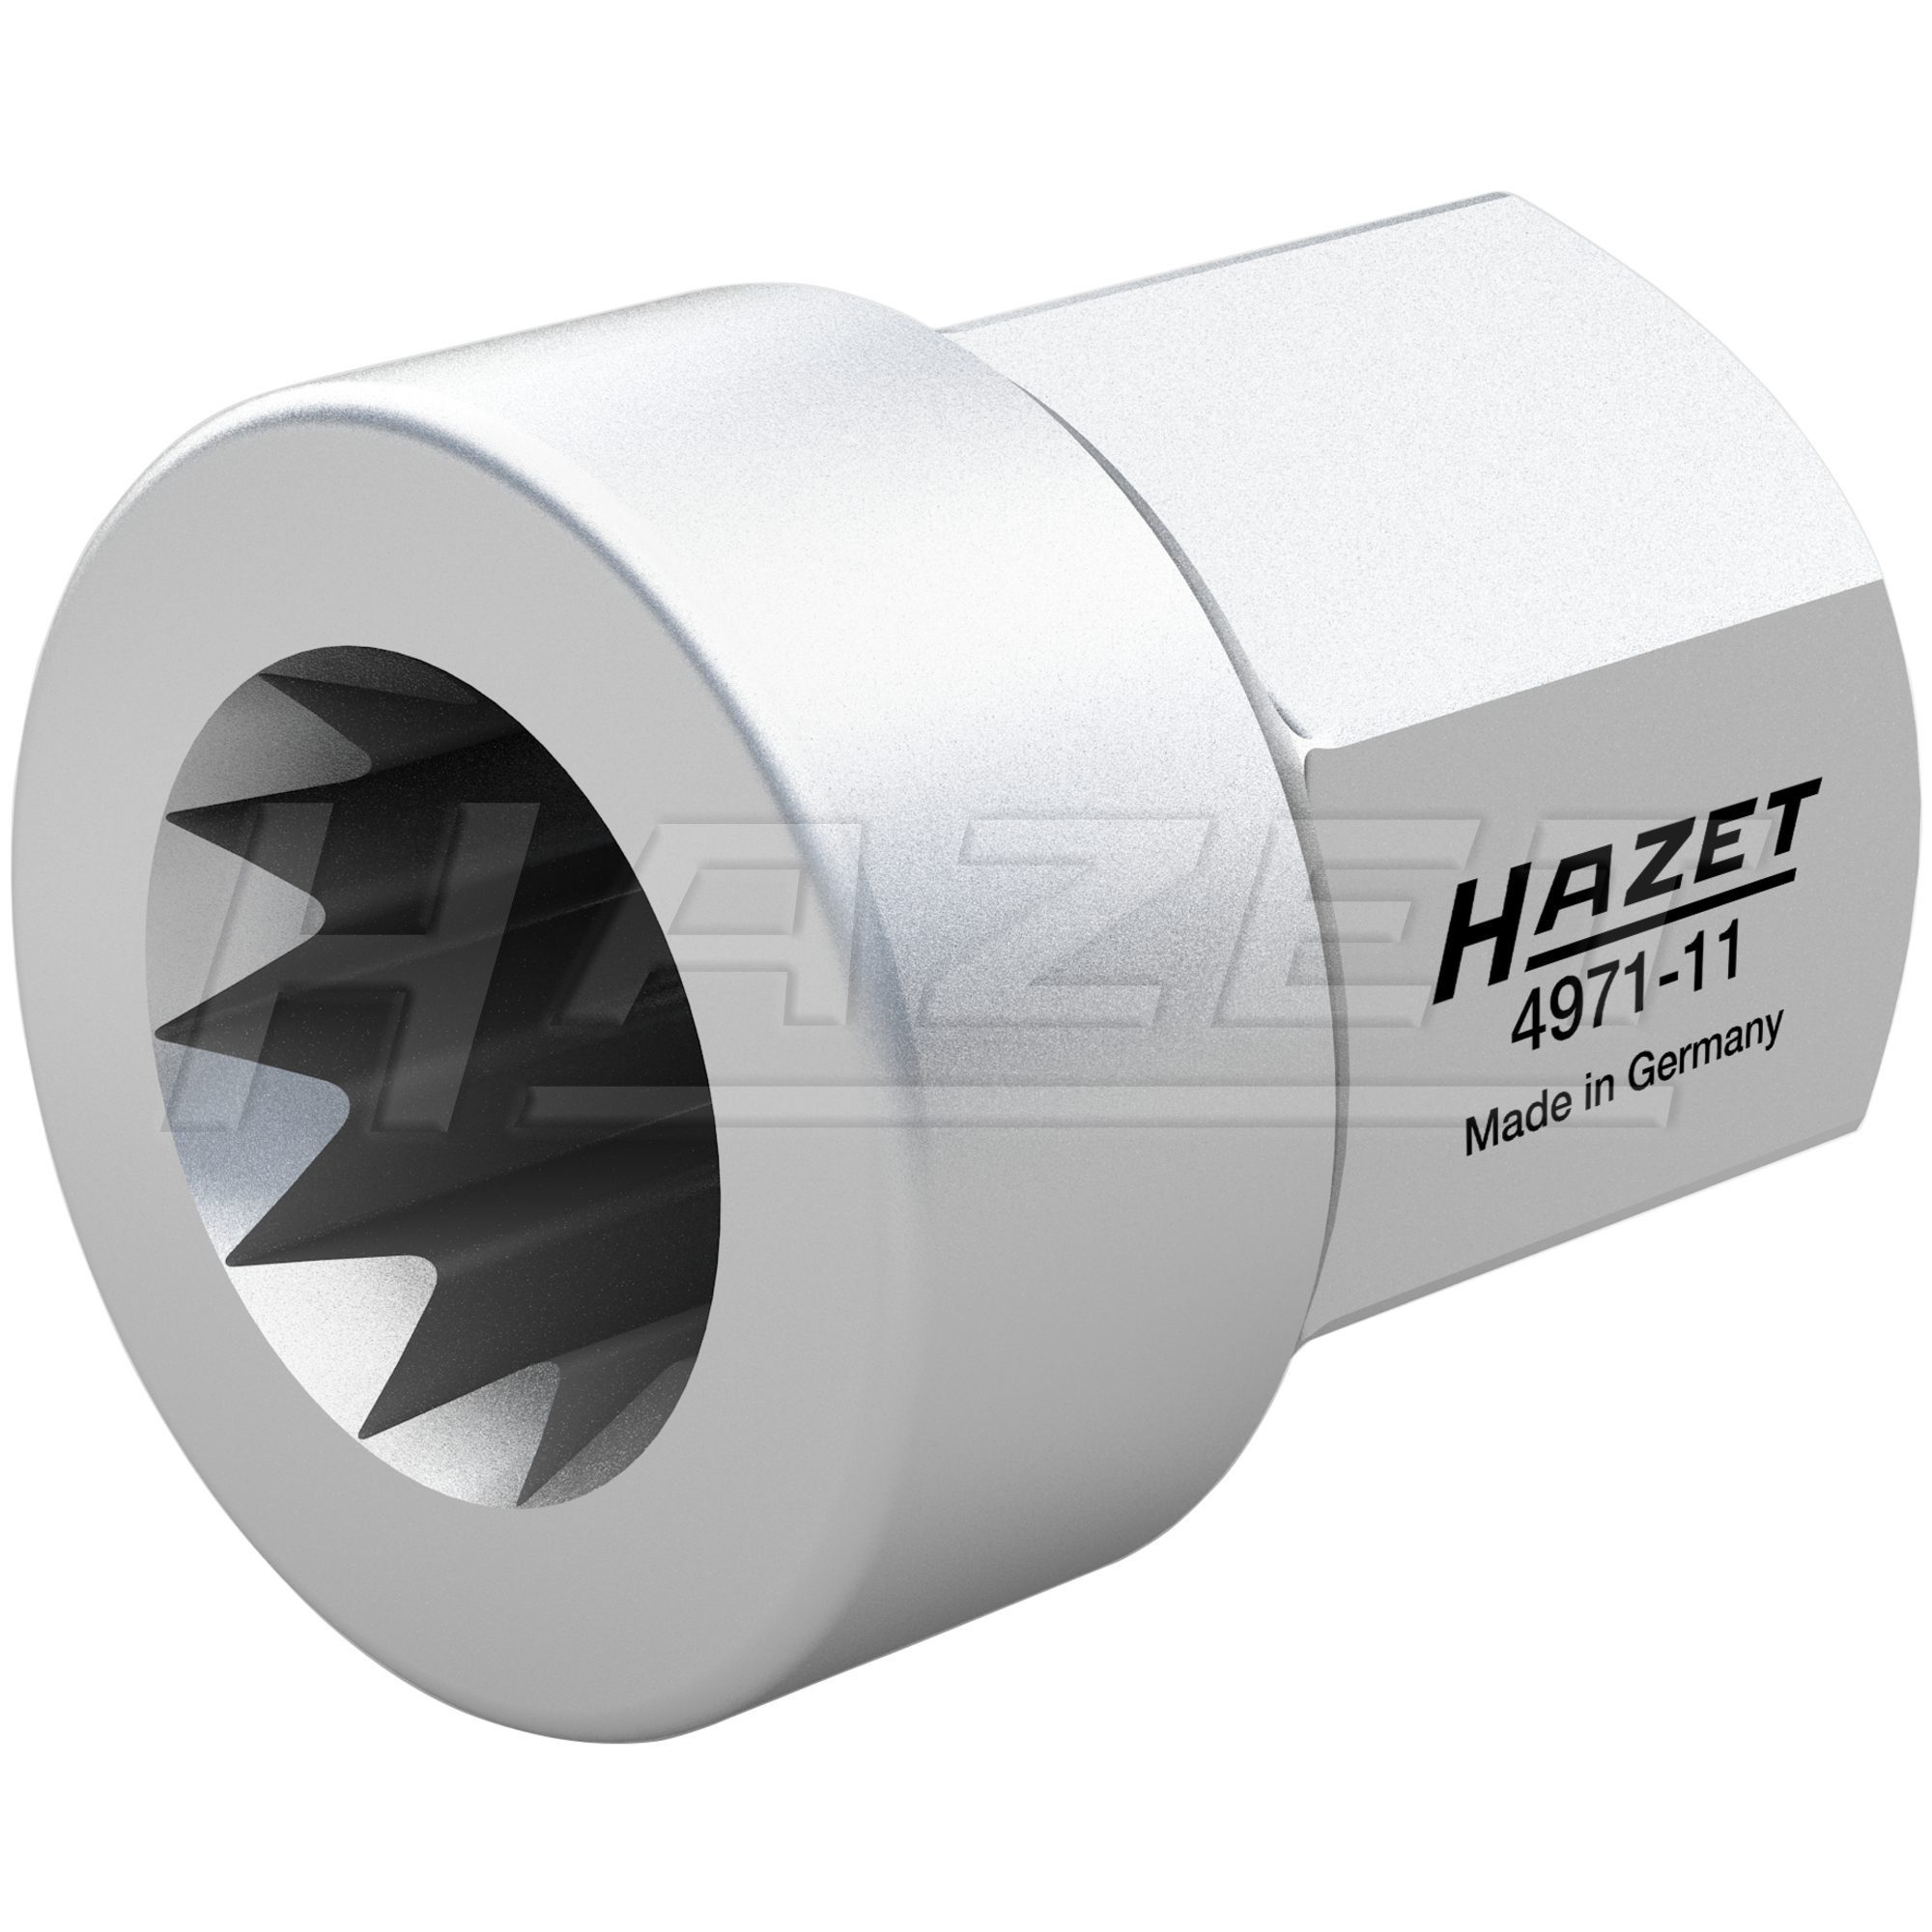 HAZET LED Taschenlampe HAZET Bremssattel-Rückstell-Einsatz, 4971-11